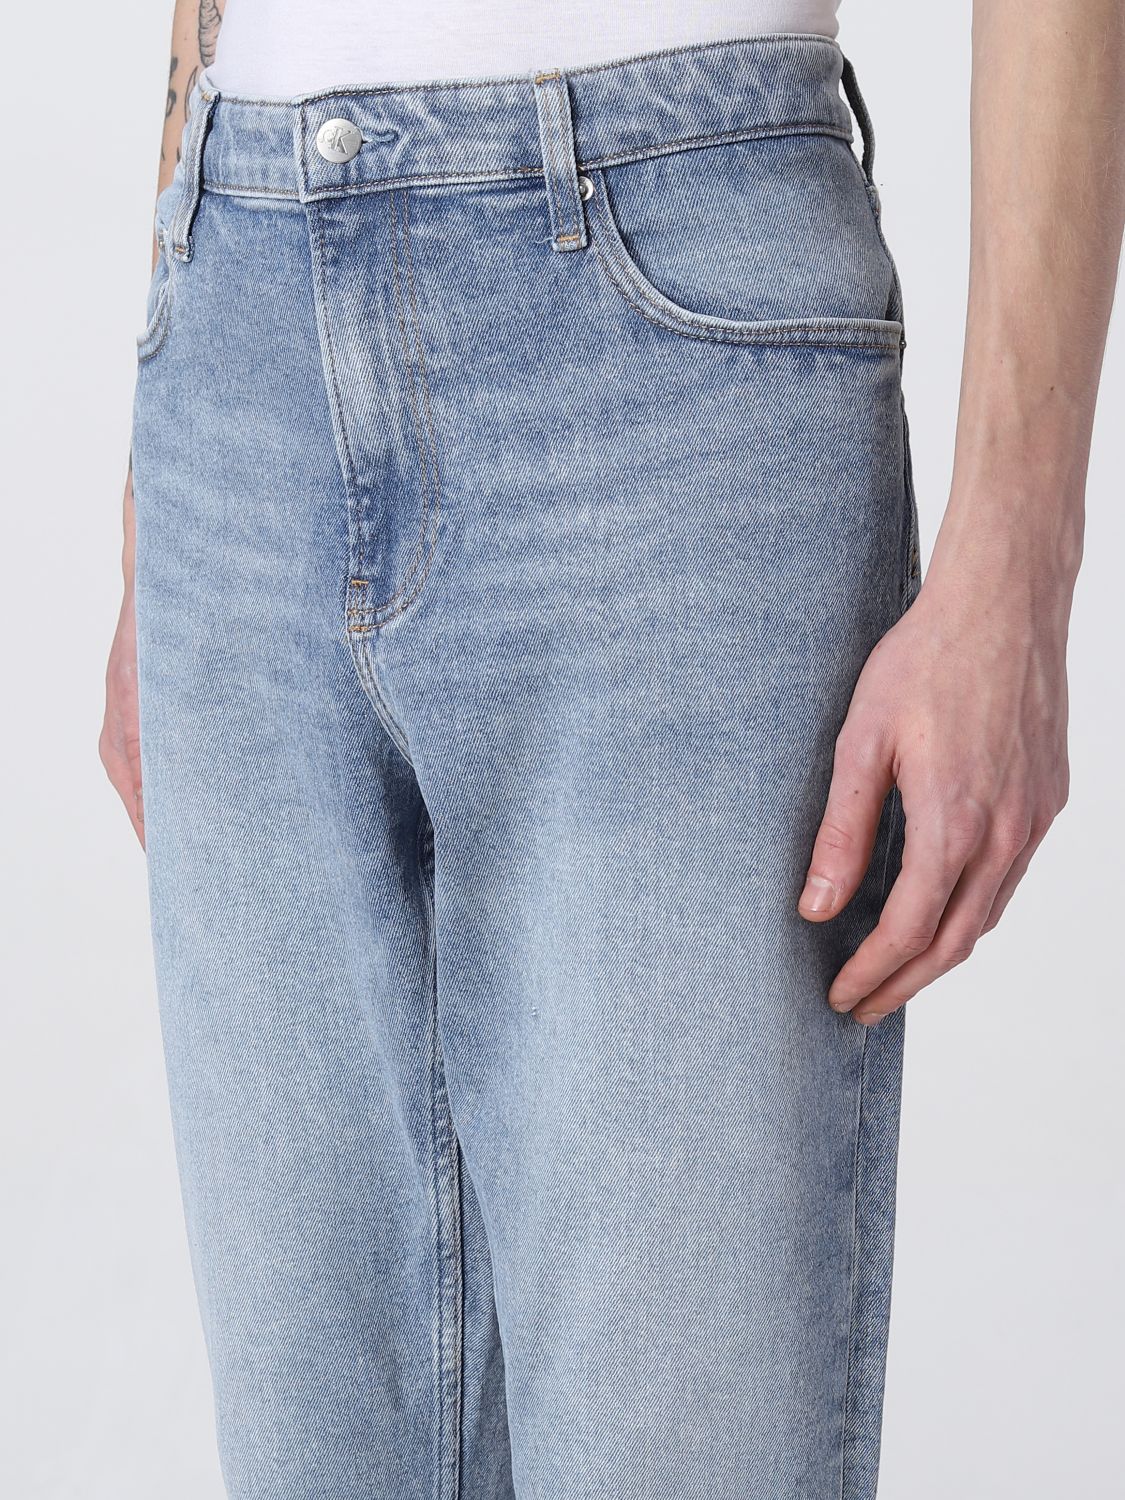 Gratificante defecto Pinchazo CALVIN KLEIN JEANS: Jeans para hombre, Denim | Jeans Calvin Klein Jeans  J30J321513 en línea en GIGLIO.COM